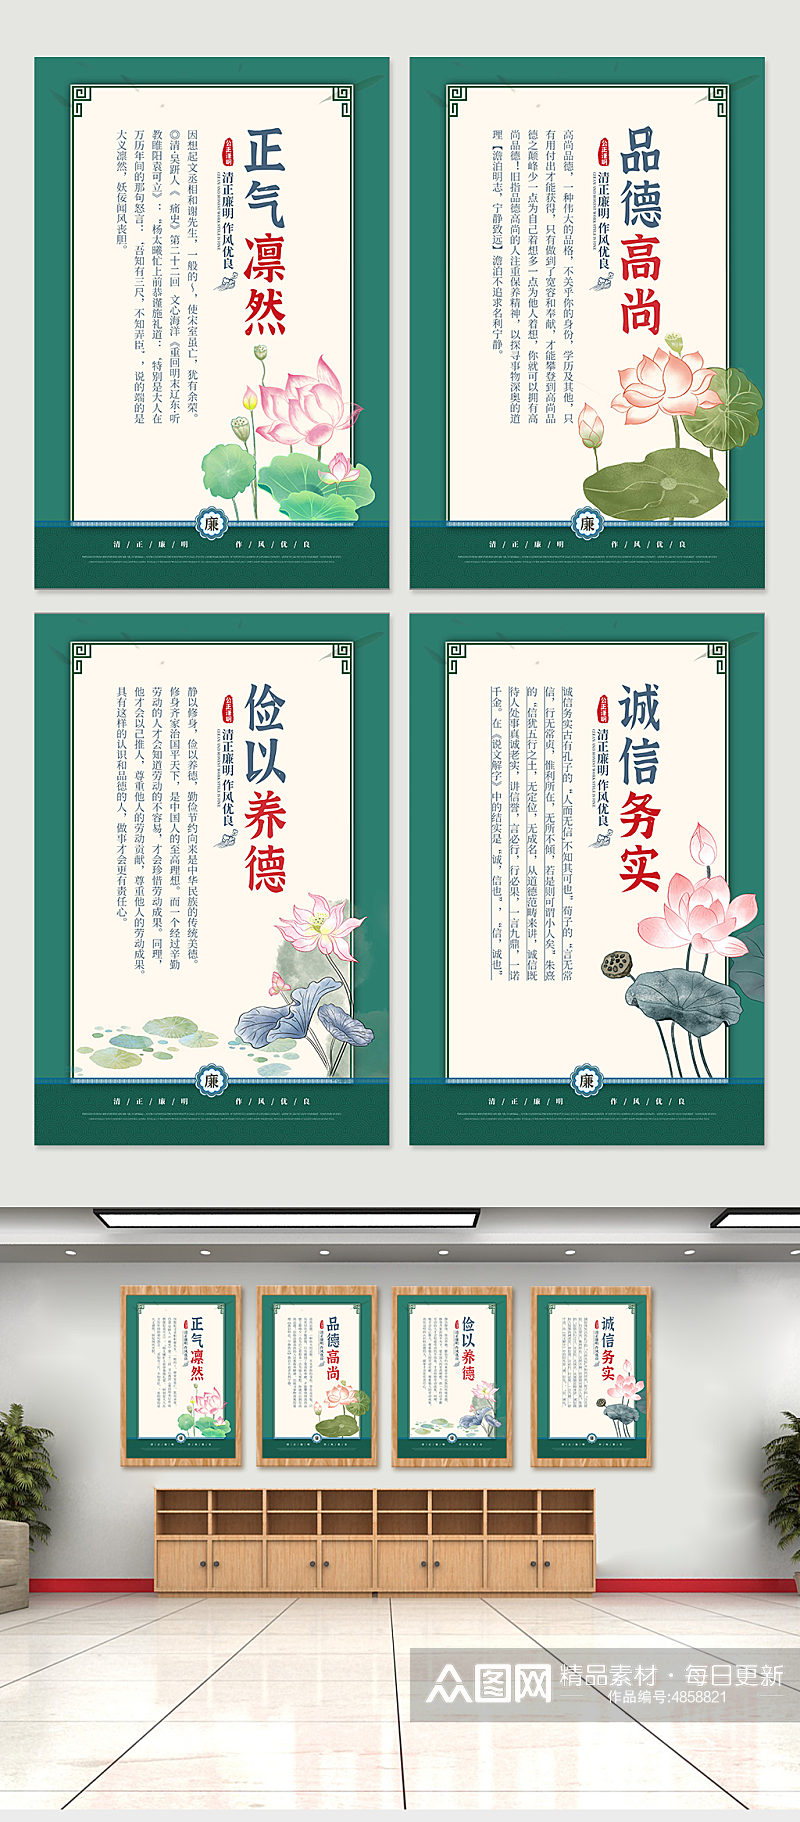 绿色中国风廉政文化清正廉洁系列海报素材